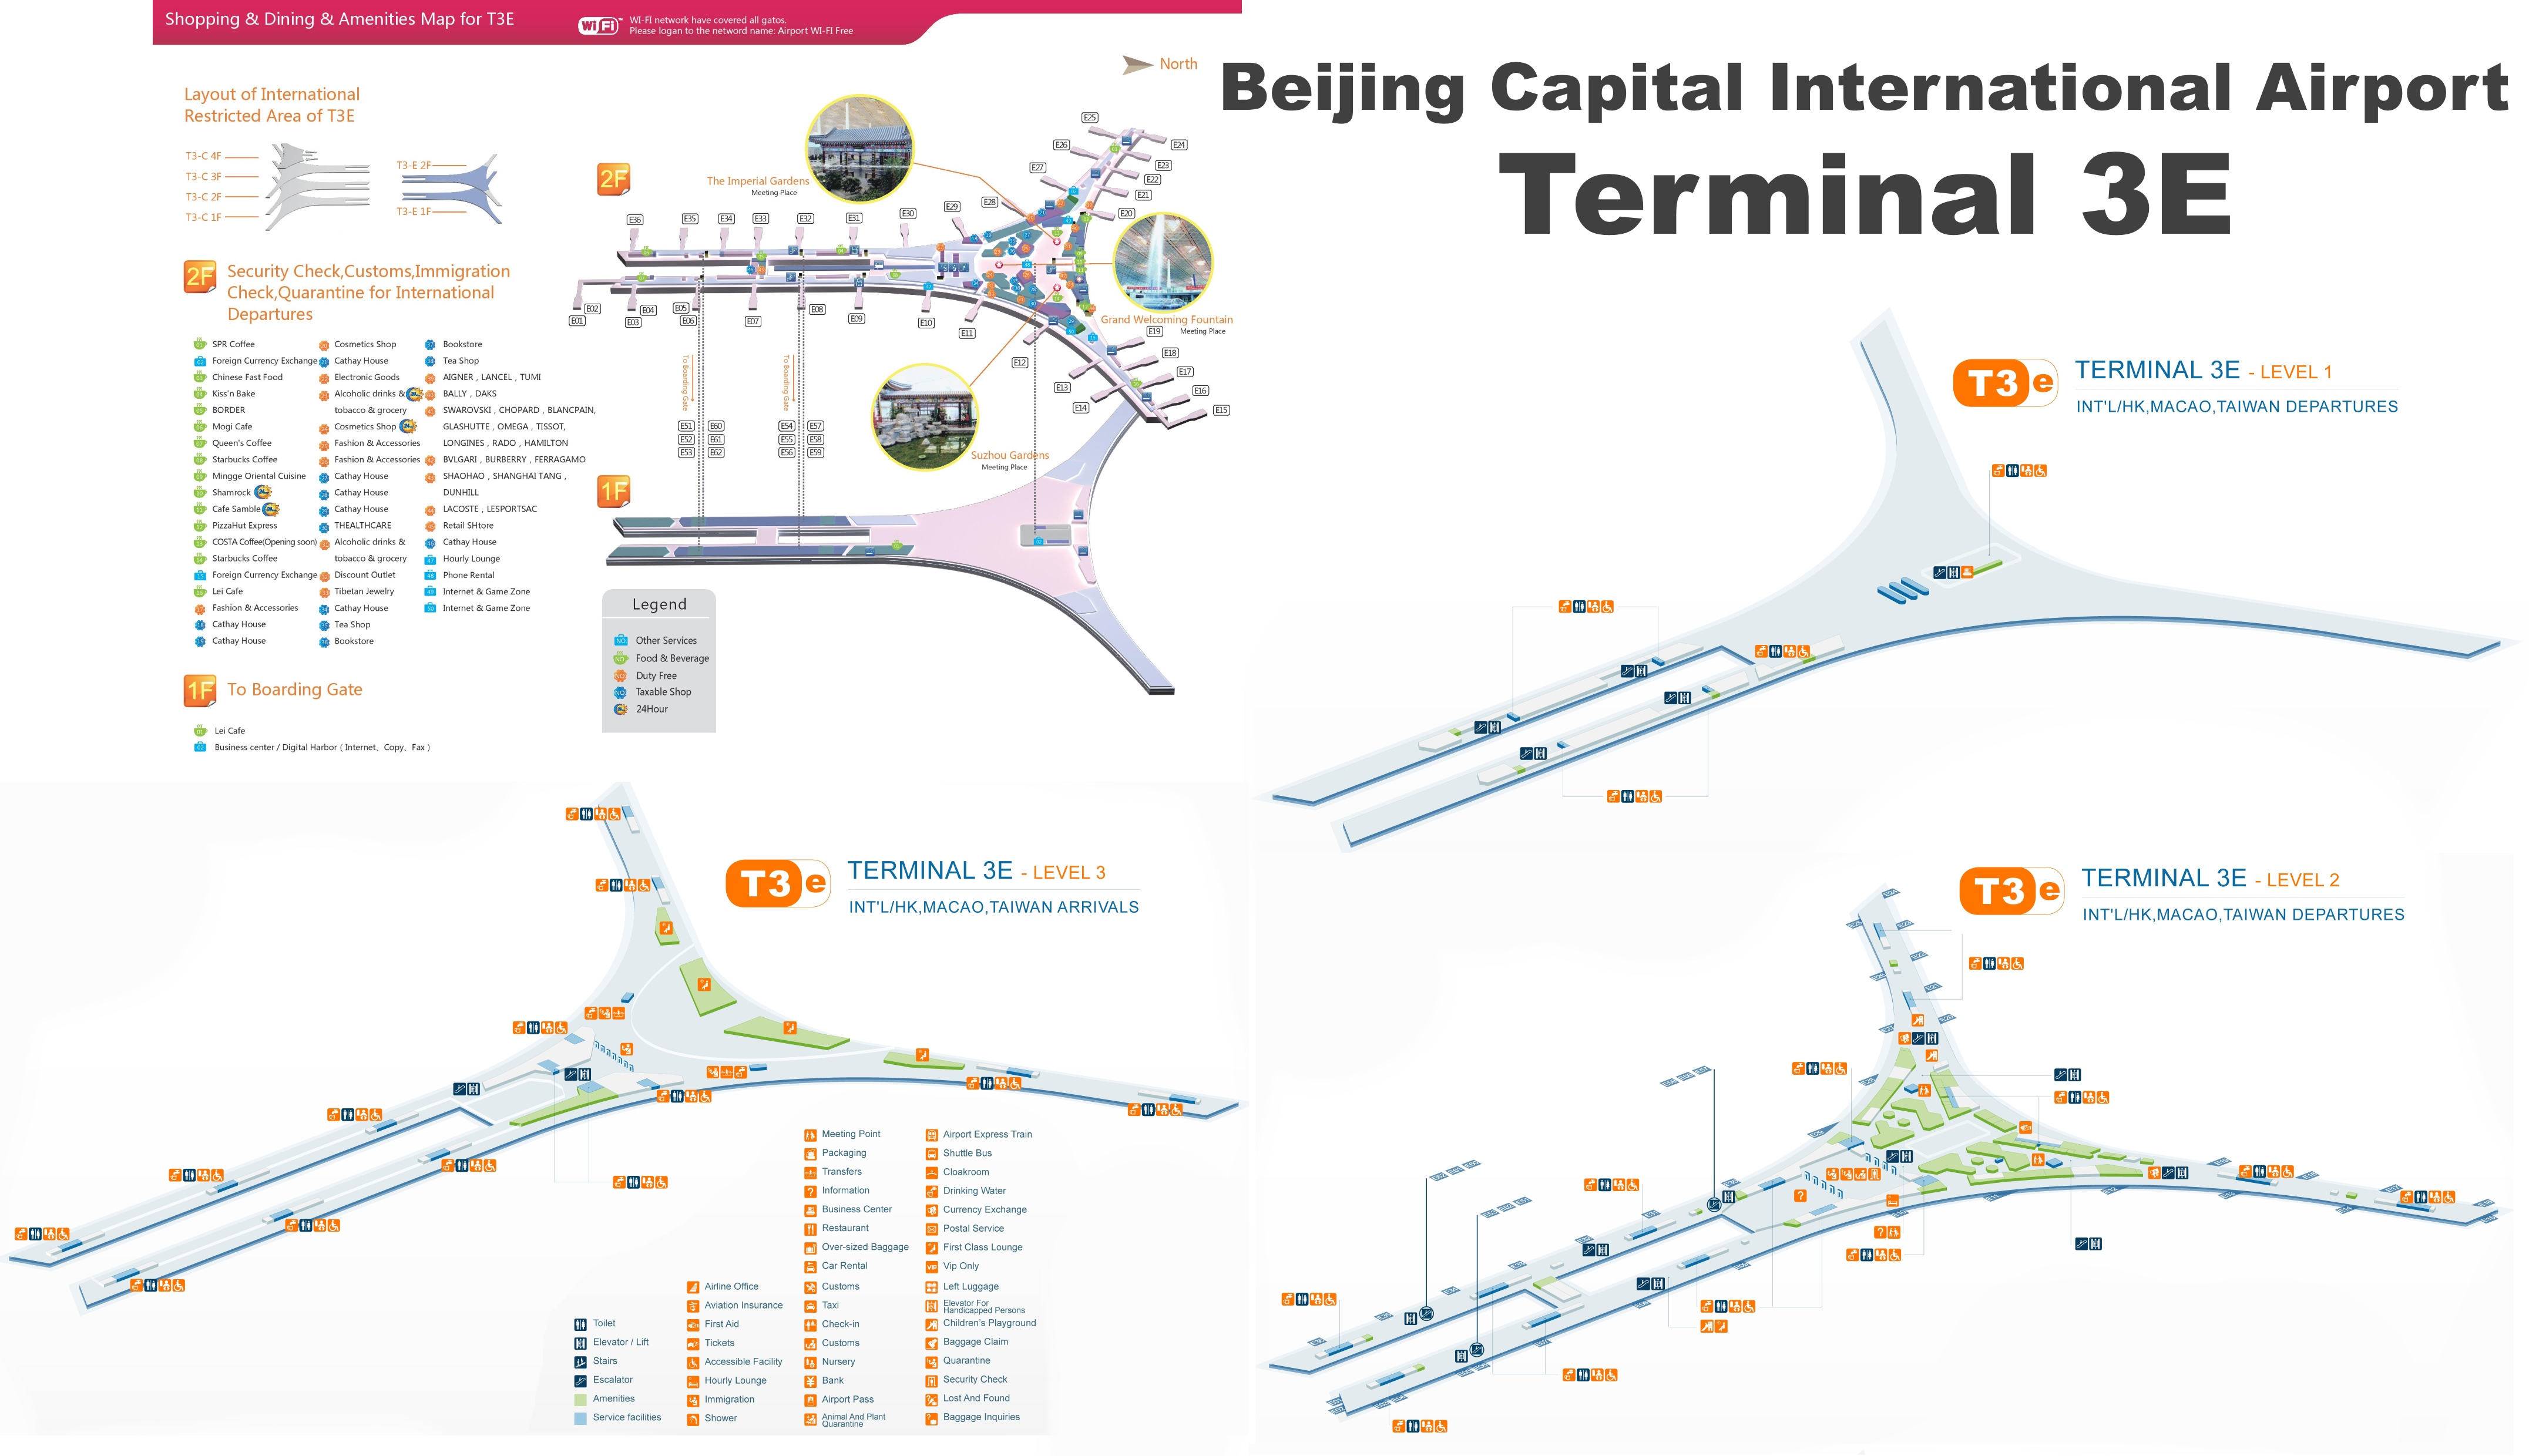 Аэропорт пекина «столичный». онлайн-табло прилетов и вылетов, сайт, расписание 2021, схема, отель, как добраться на туристер.ру